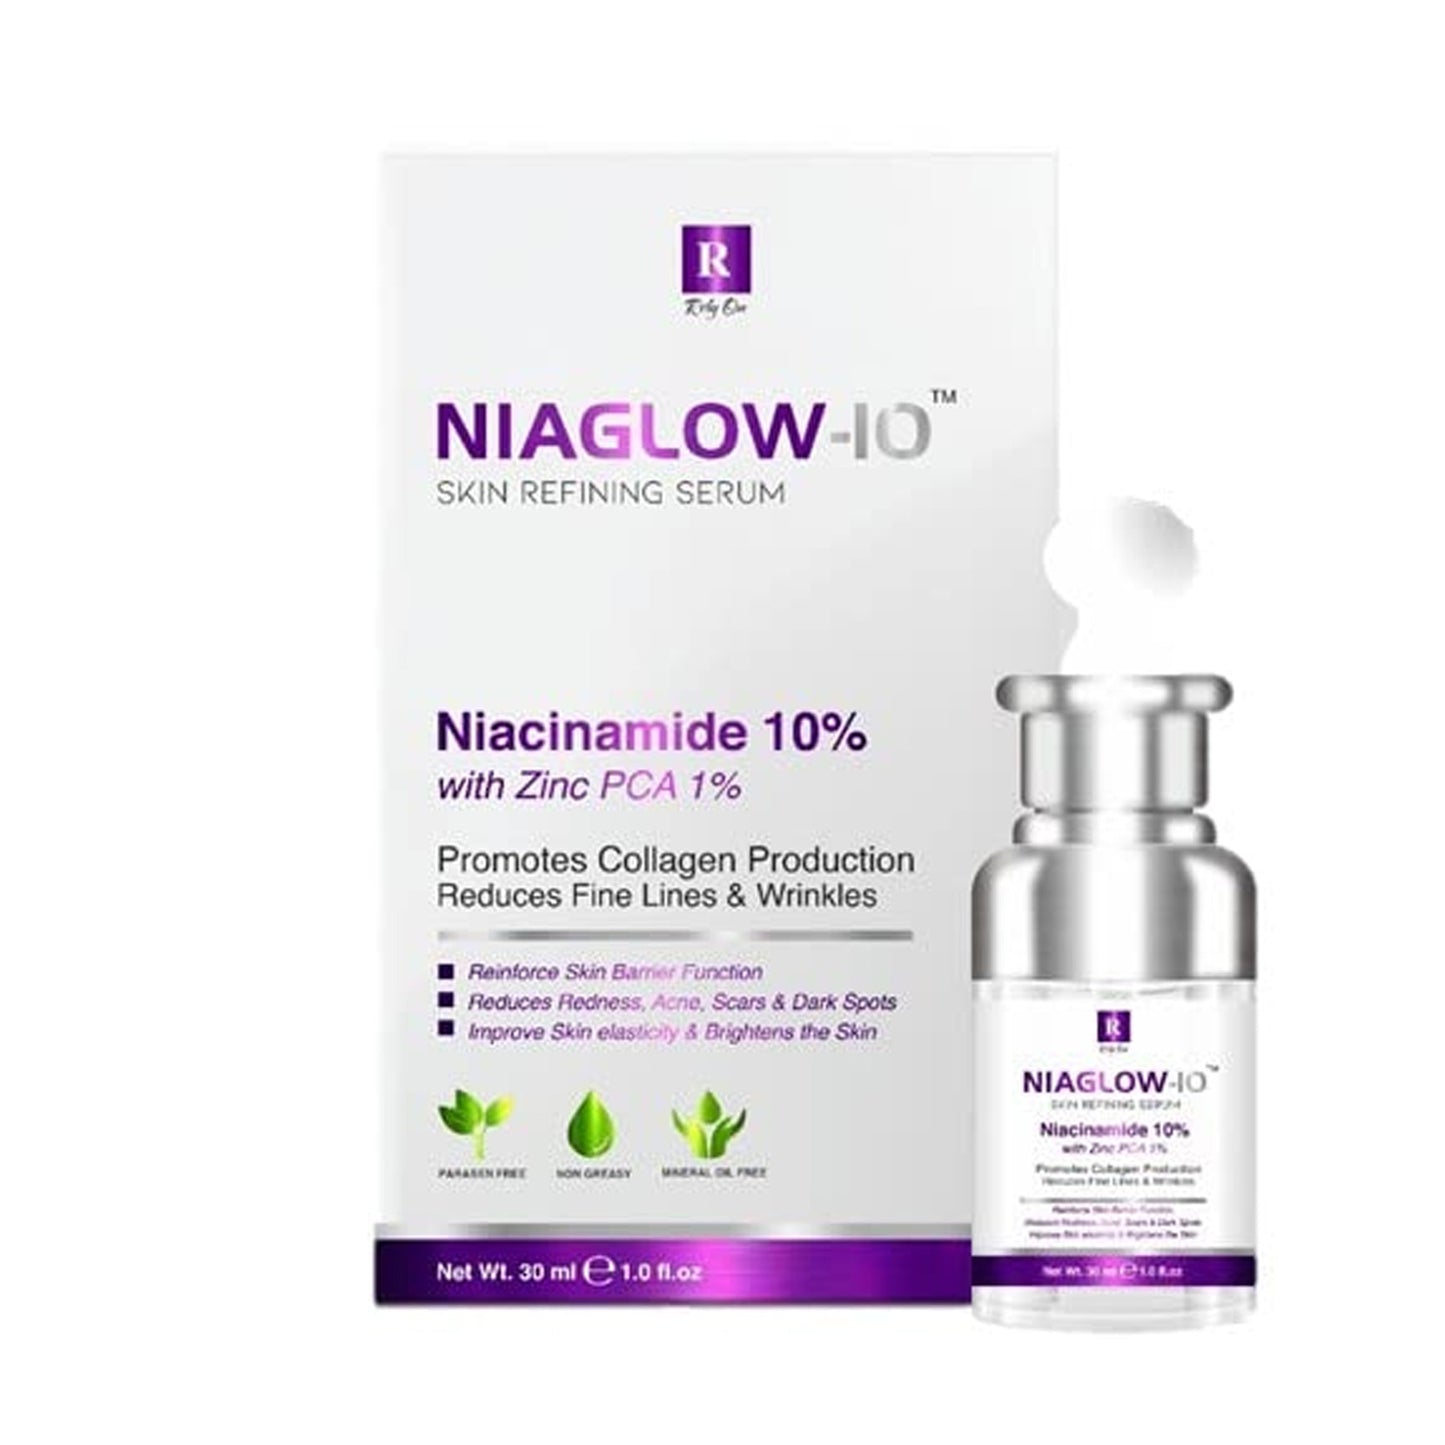 Niaglow-10 Skin Refining Serum, 30ml